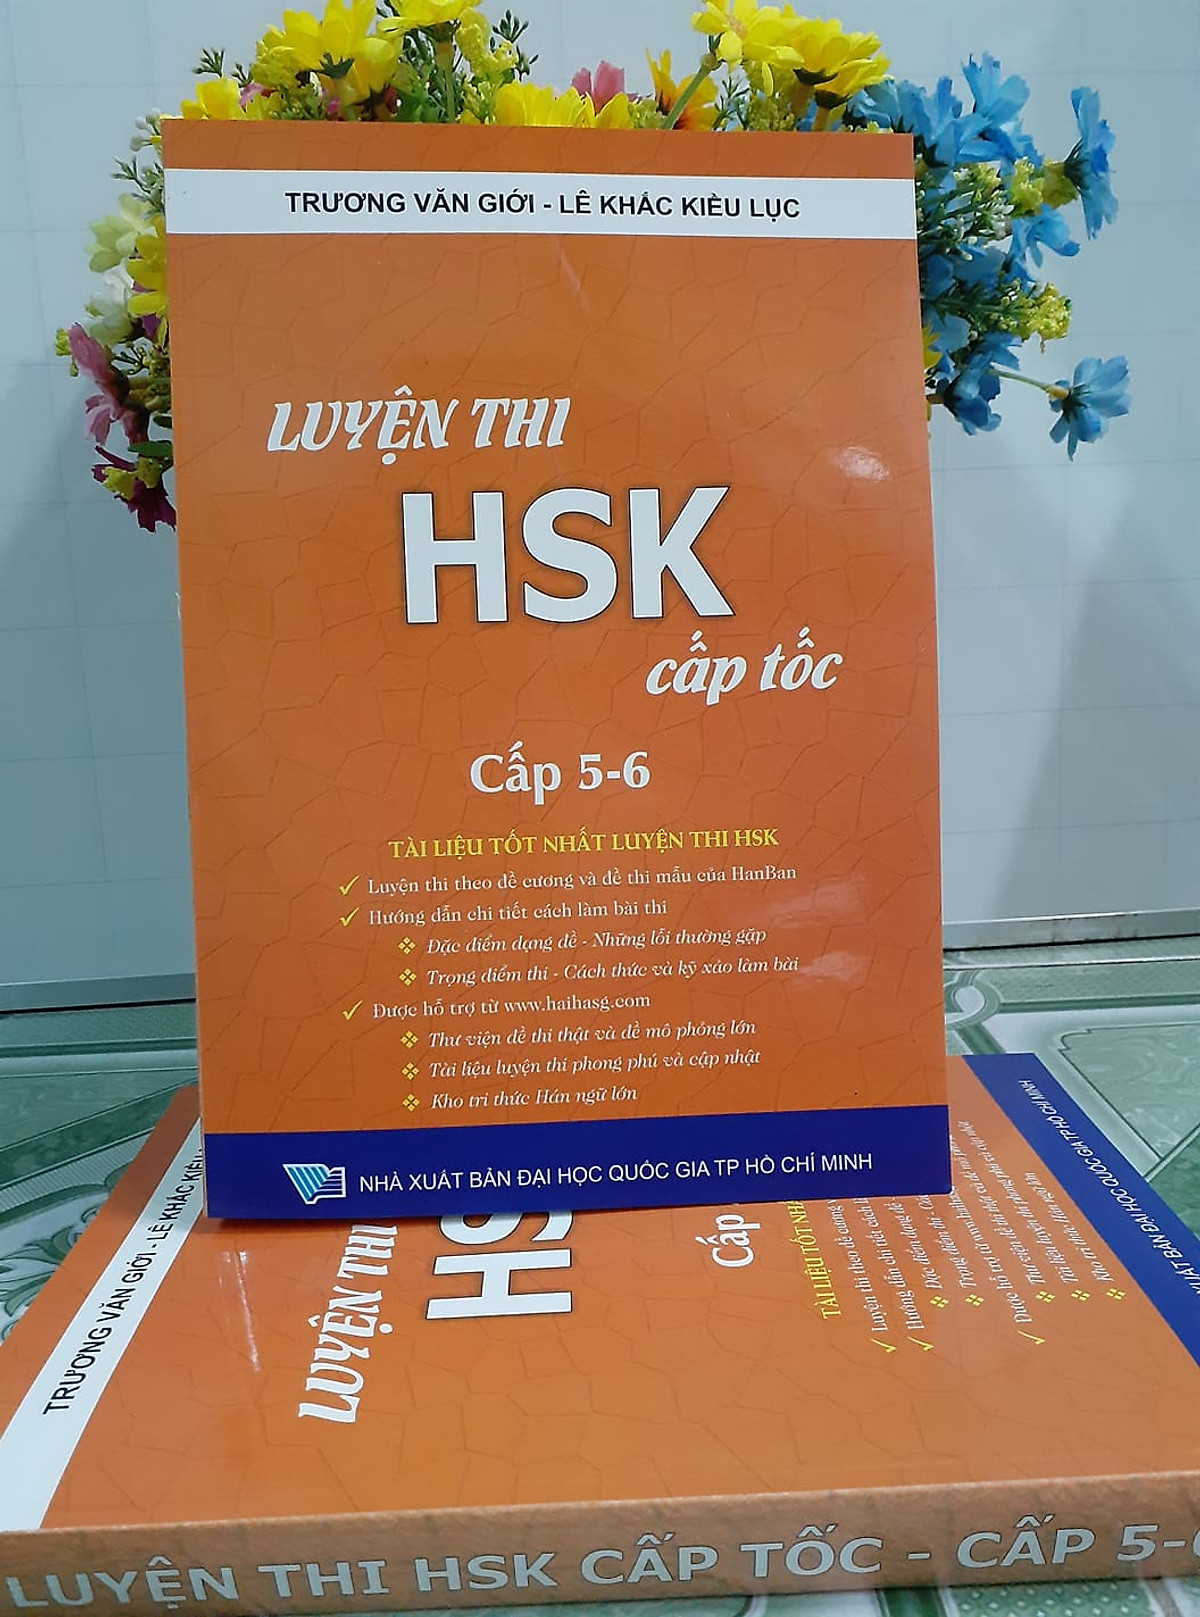 Sách - Combo: Luyện thi HSK cấp tốc tập 3 (tương đương HSK 5+6 kèm CD) + Phân tích đáp án các bài luyện dịch Tiếng Trung + DVD tài liệu